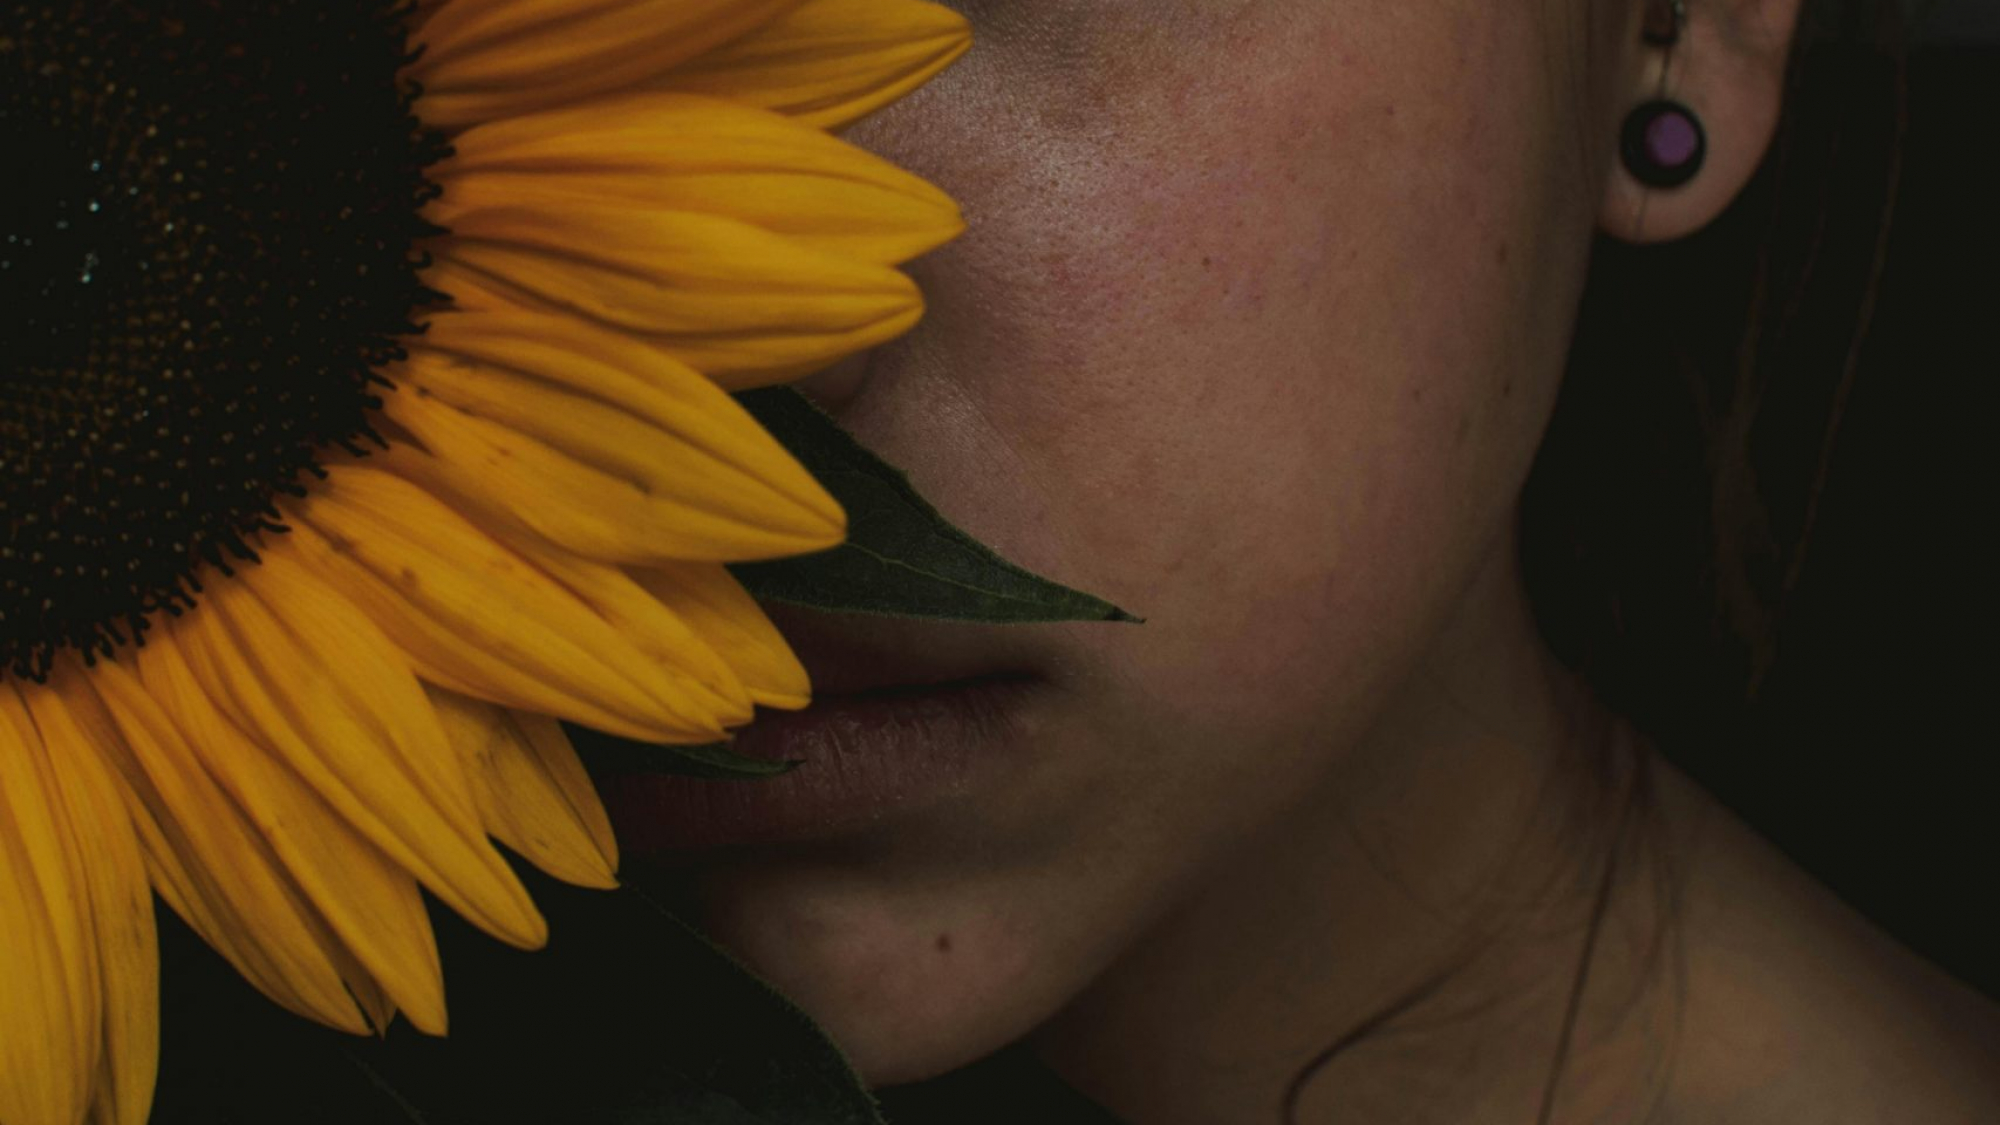 Frau mit Sonnenblume. Sie hält die Sonnen vor ihr Gesicht, sodass nur die linke Gesichtshälfte zu sehen ist. Das Bild verträumt und etwas dunkel. Die Frau blickt ernst, aber ihre Gesichtszüge sind entspannt